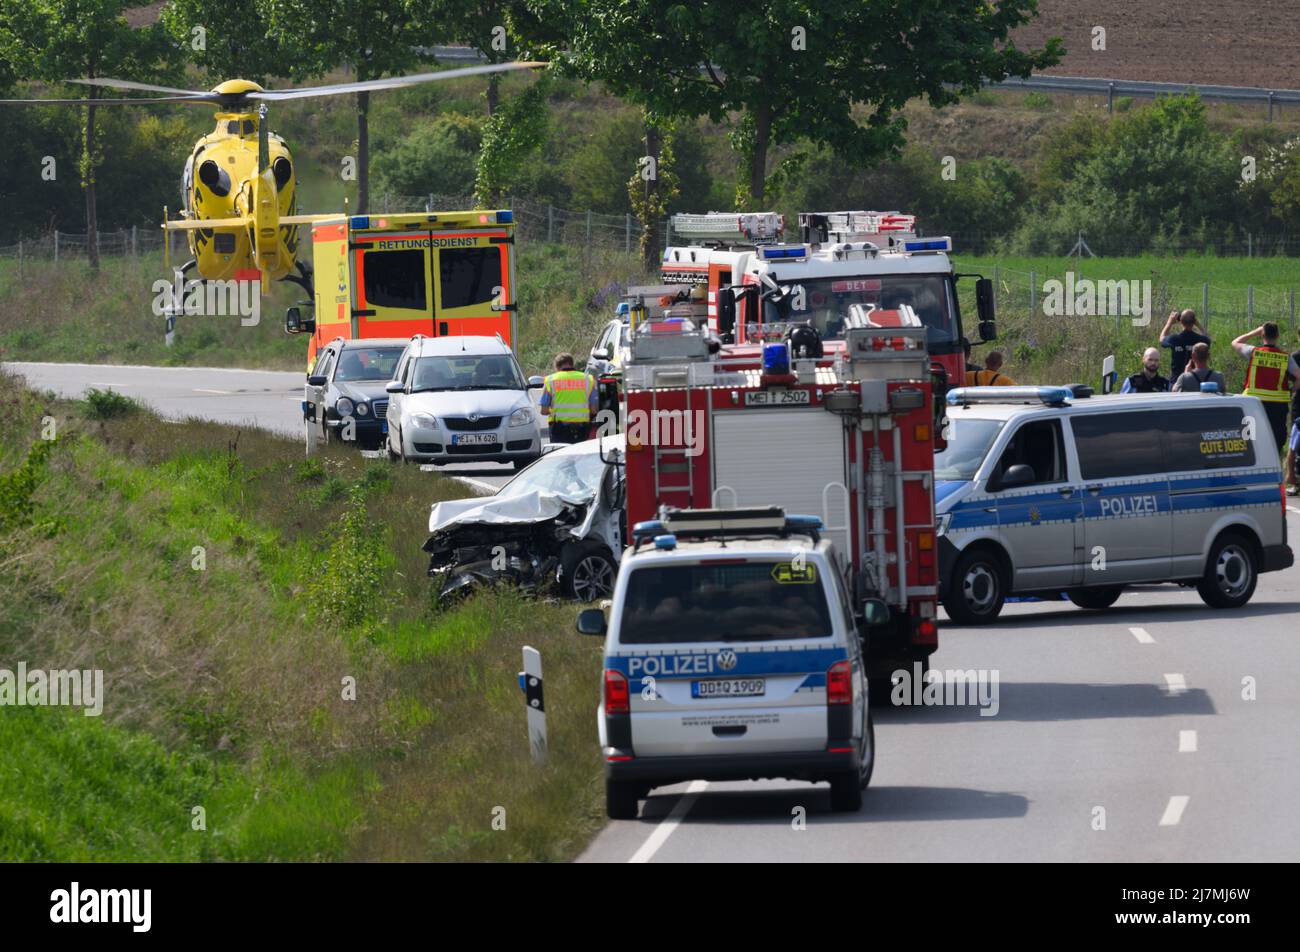 10 mai 2022, Saxe, Dresde: Un hélicoptère de sauvetage ADAC prend son envol après la reprise après un accident sur le S81 près de Dresde. Une personne est décédée mardi dans le grave accident de la route sur le S81 près de Dresde. Photo: Robert Michael/dpa Banque D'Images